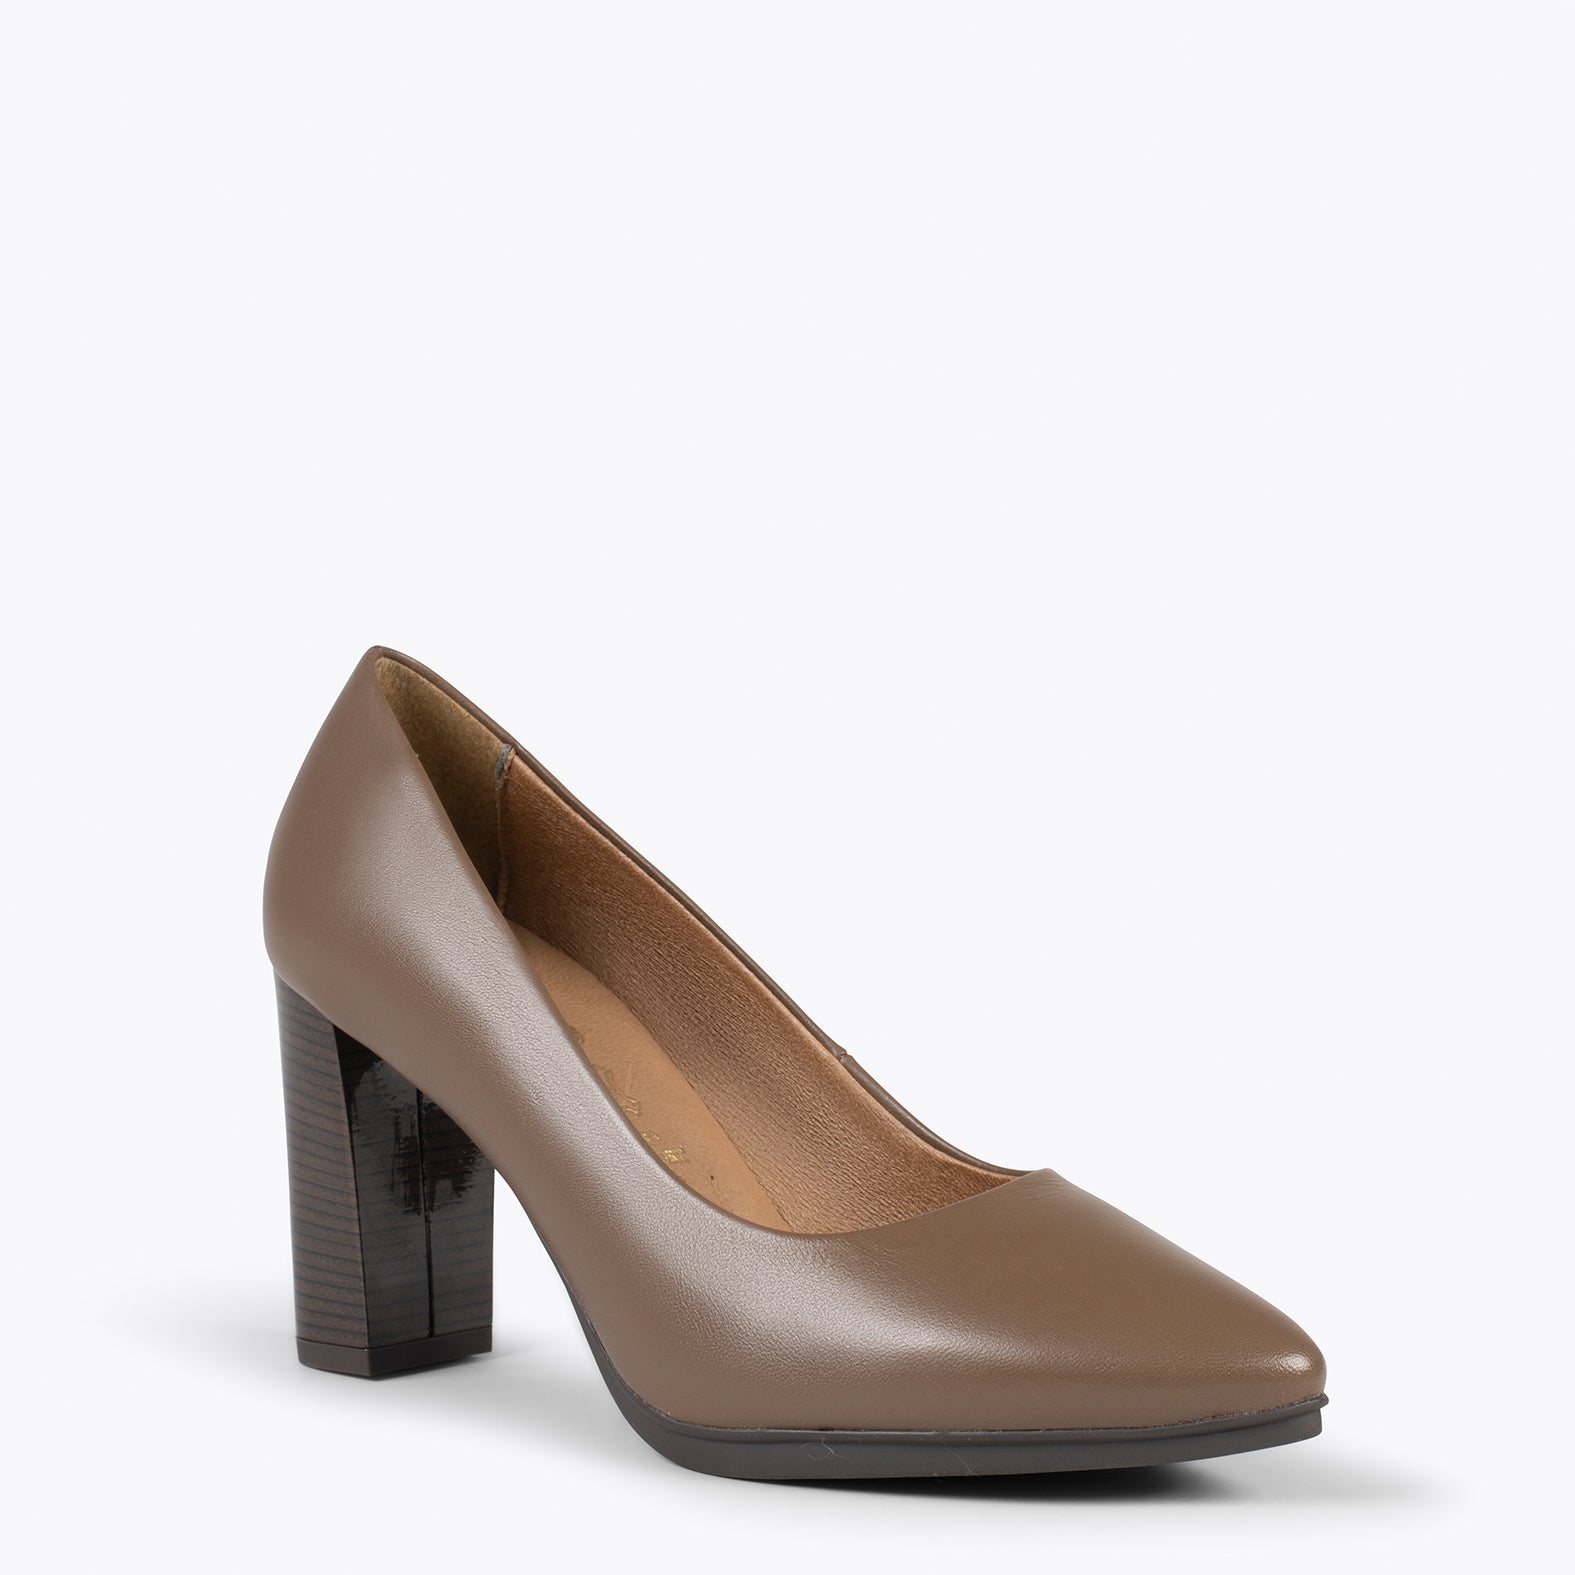 URBAN ÉCLAT – Chaussures à talon haut en cuir nappa MARRON